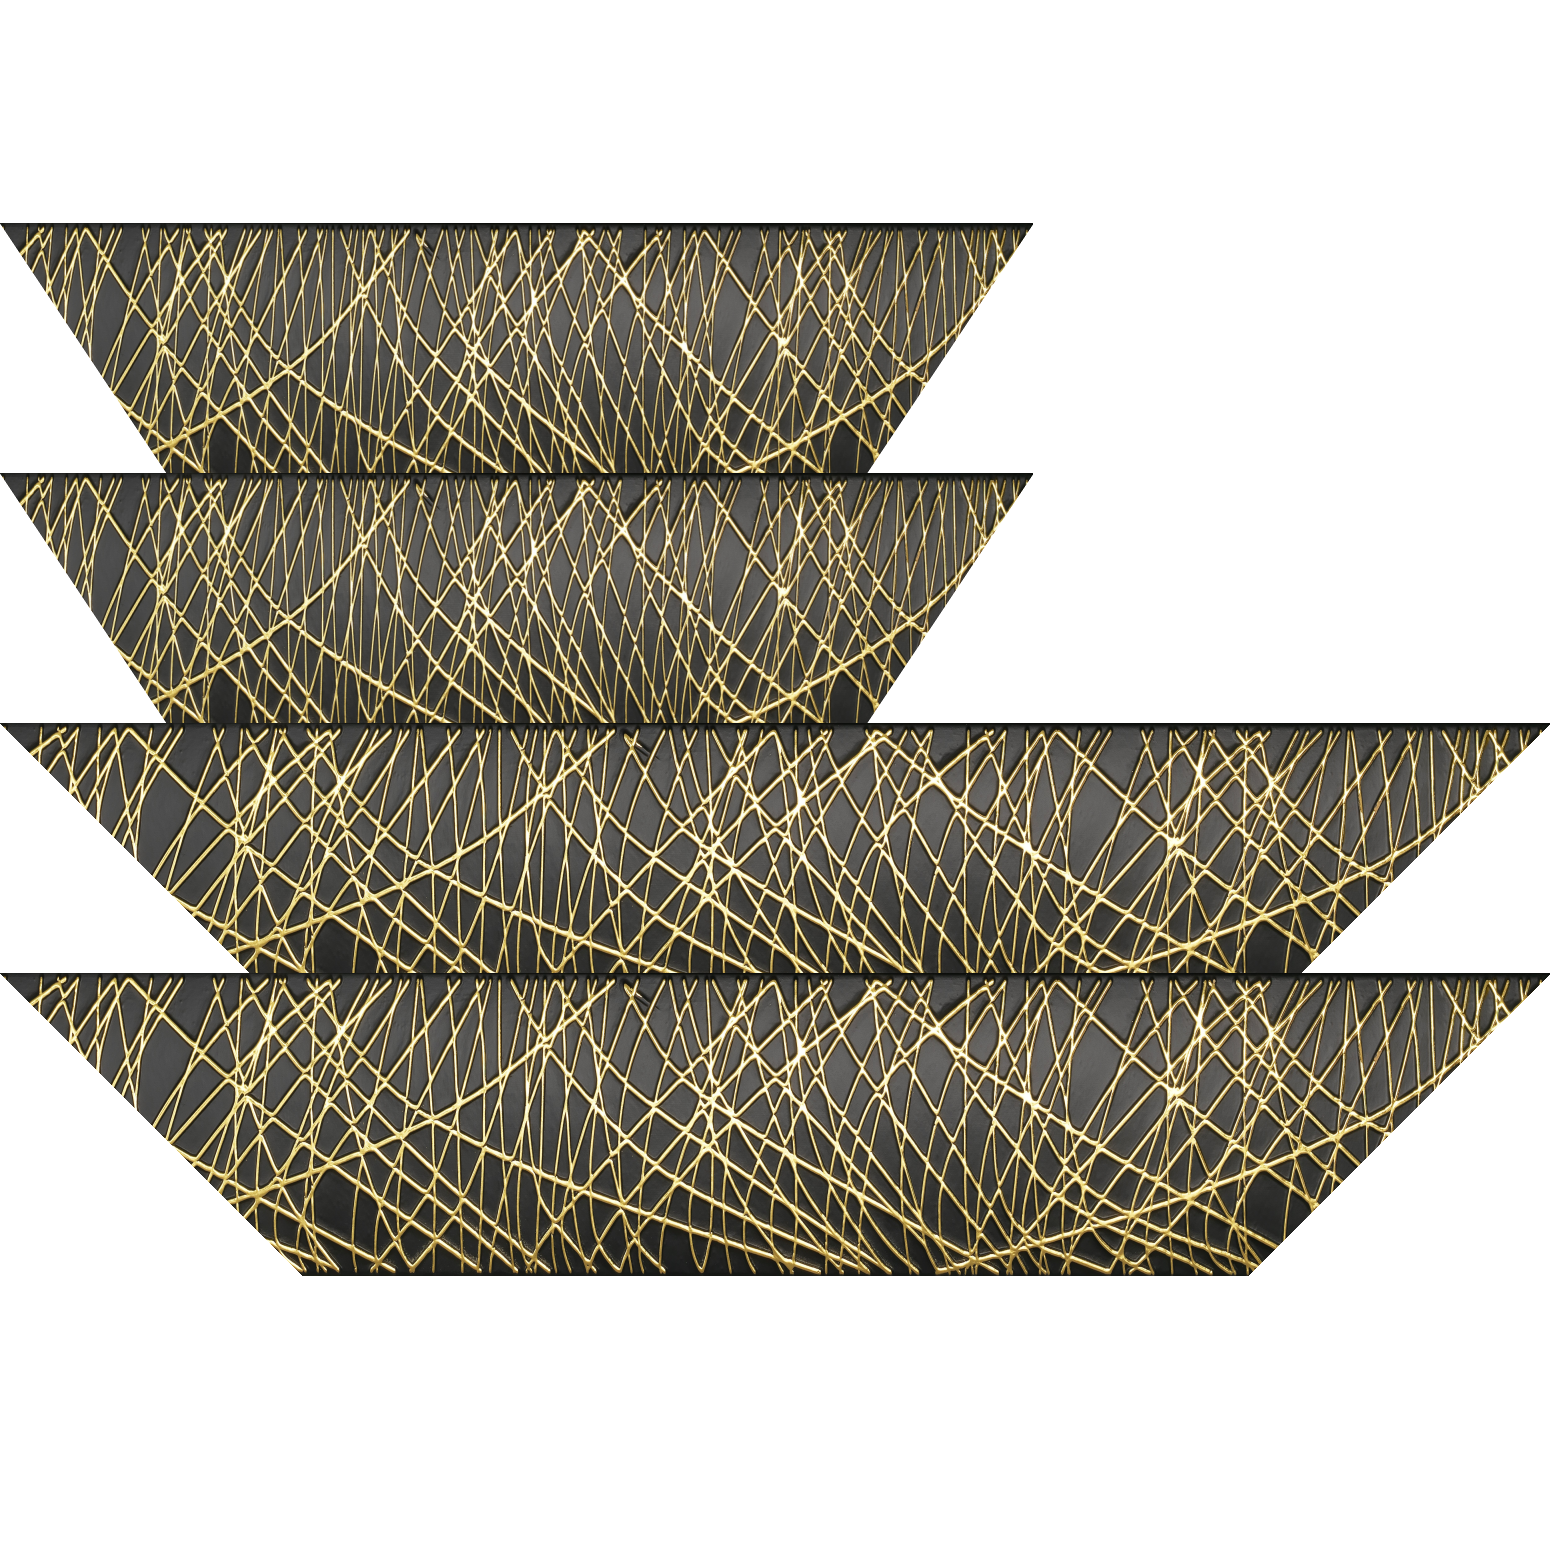 Baguette bois profil arrondi méplat largeur 9.9cm couleur noir satiné trait or en relief - 84.1x118.9